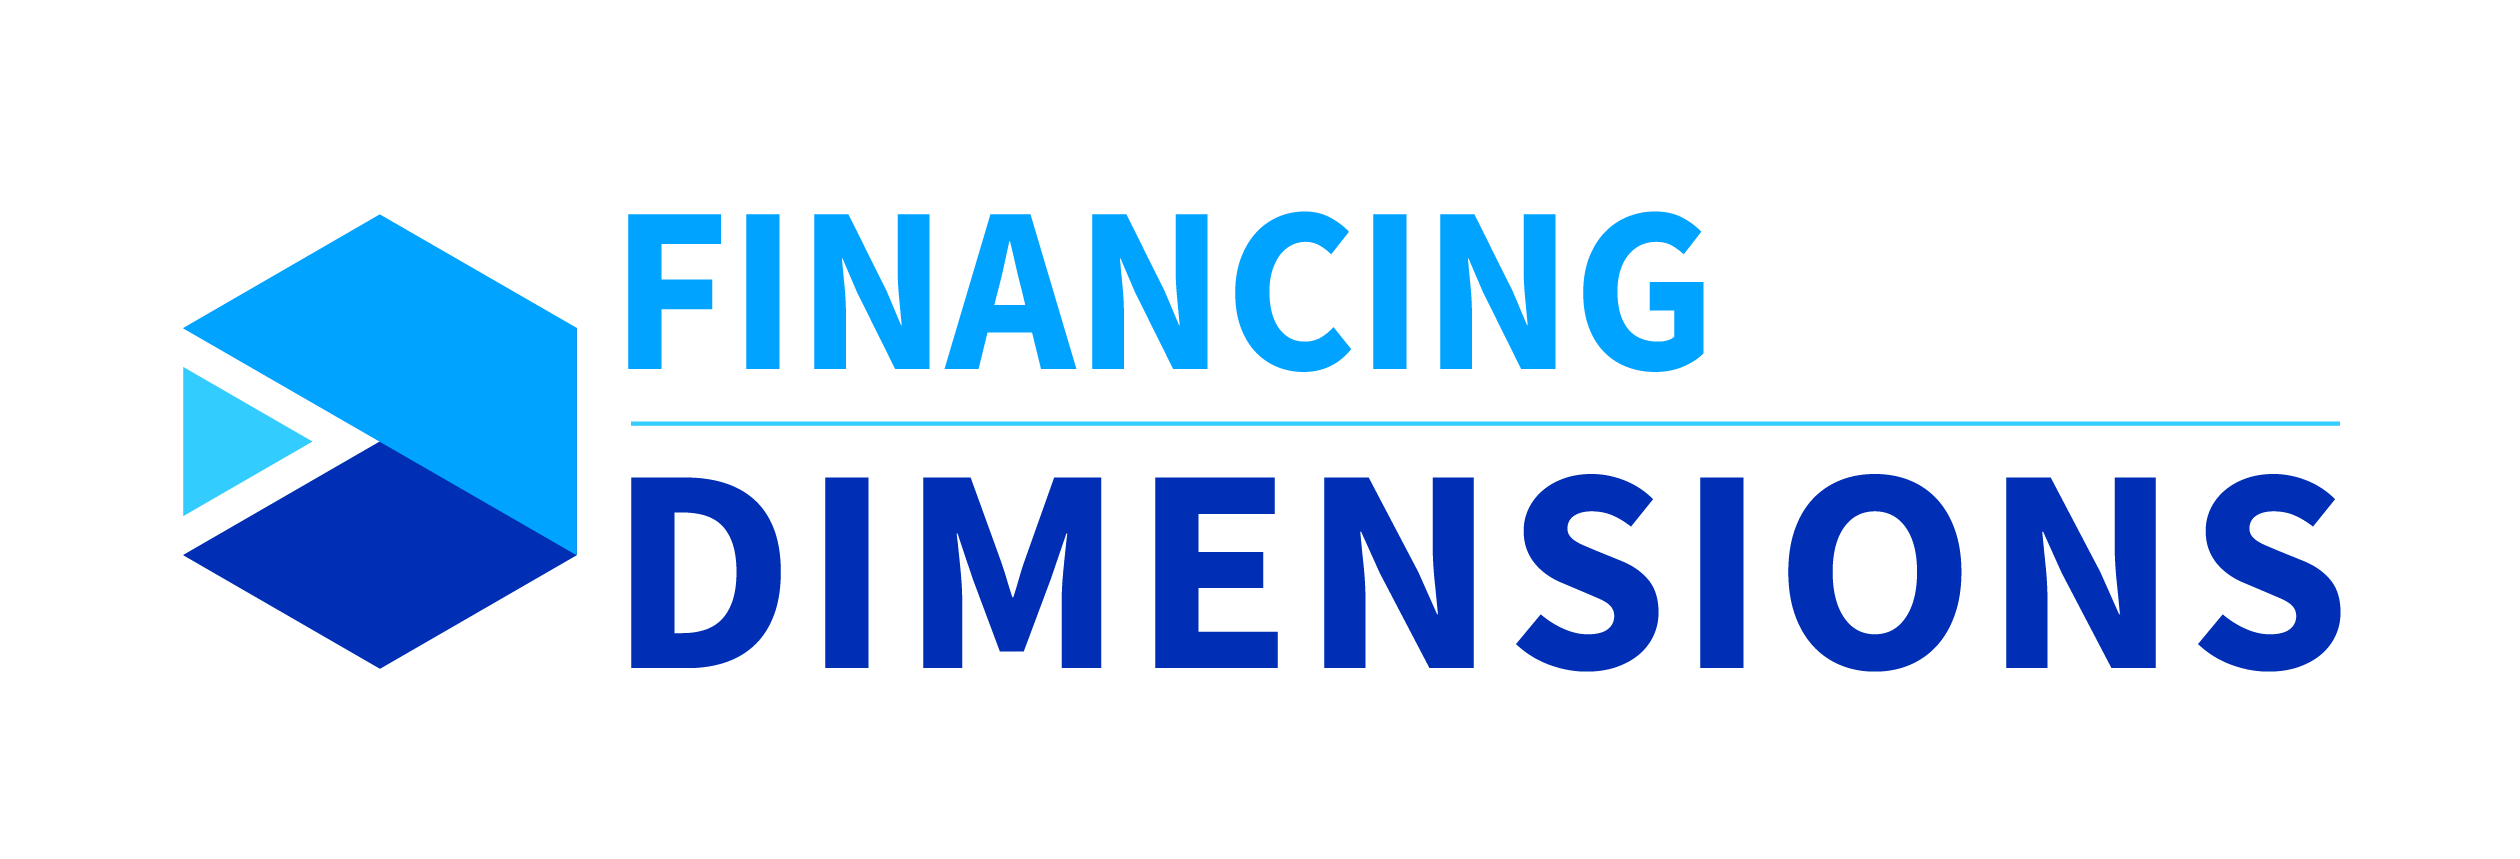 Dimensions du financement - Acceltech Pte Ltd